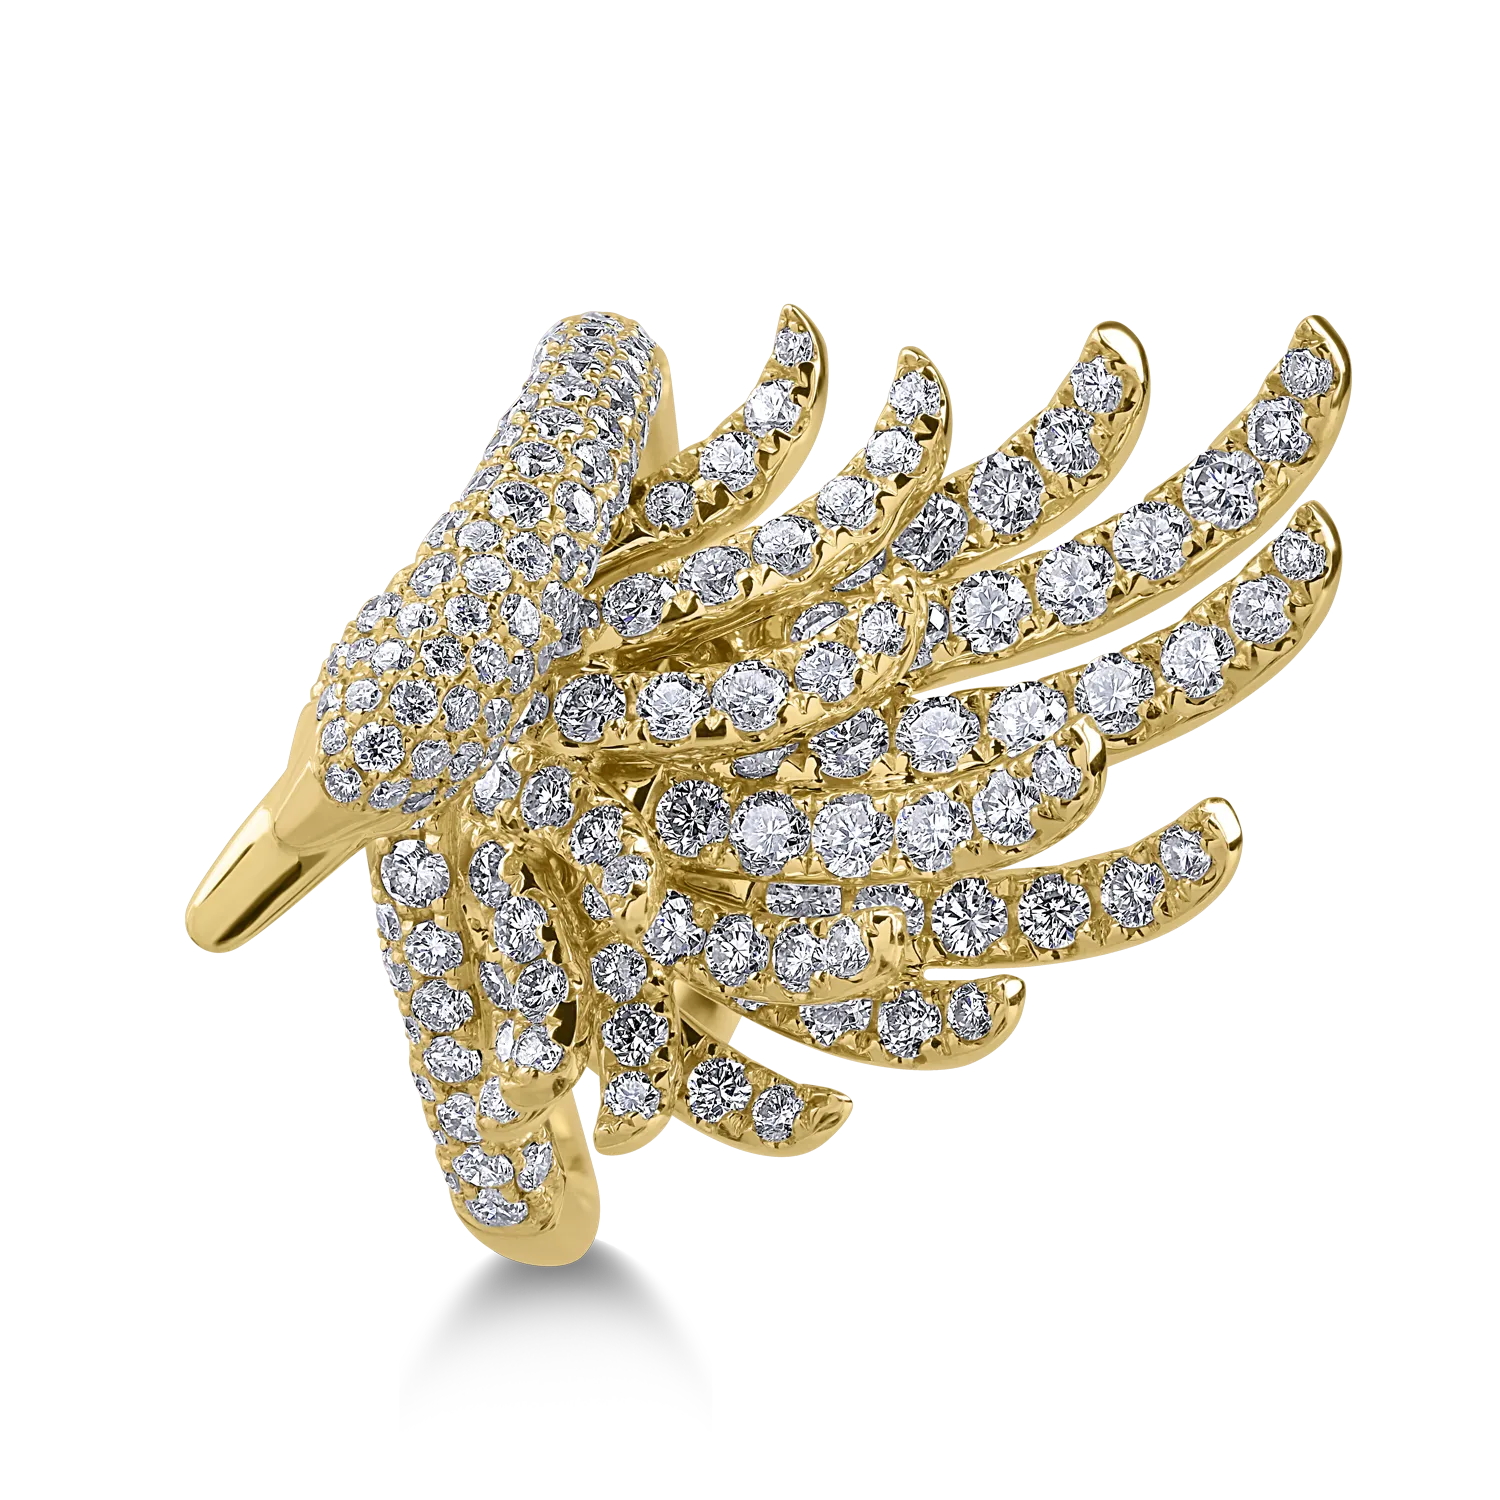 Sárga arany gyűrű 1.8ct tiszta gyémántokkal és 0.01ct sárga gyémántokkal